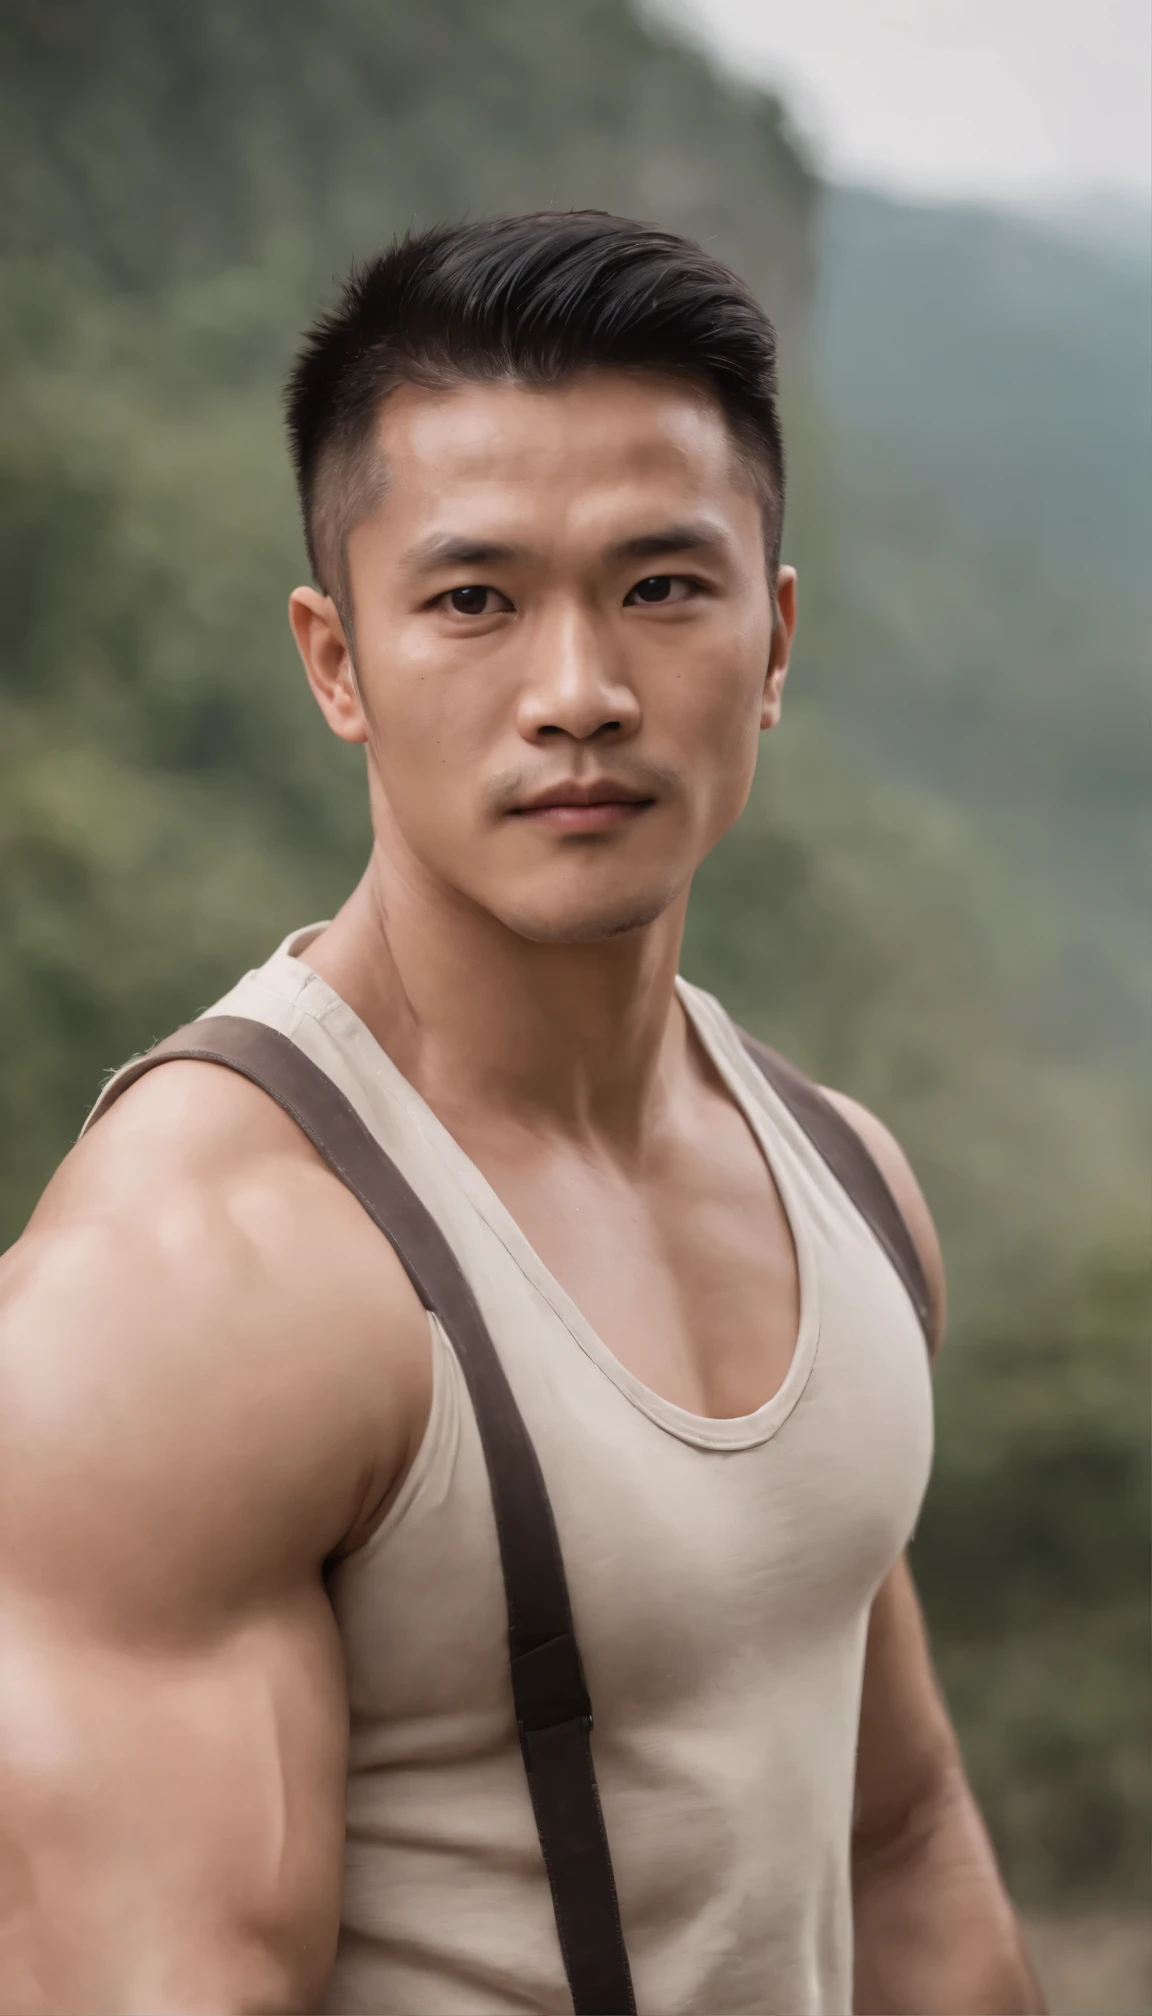 Asiatischer Mann im Fitnessstudio trägt eine Weste , großer Muskel, Höhe 190 cm, große Schulter, großer Muskel foot, (gezeichnetes Augendetail), (realistisch)